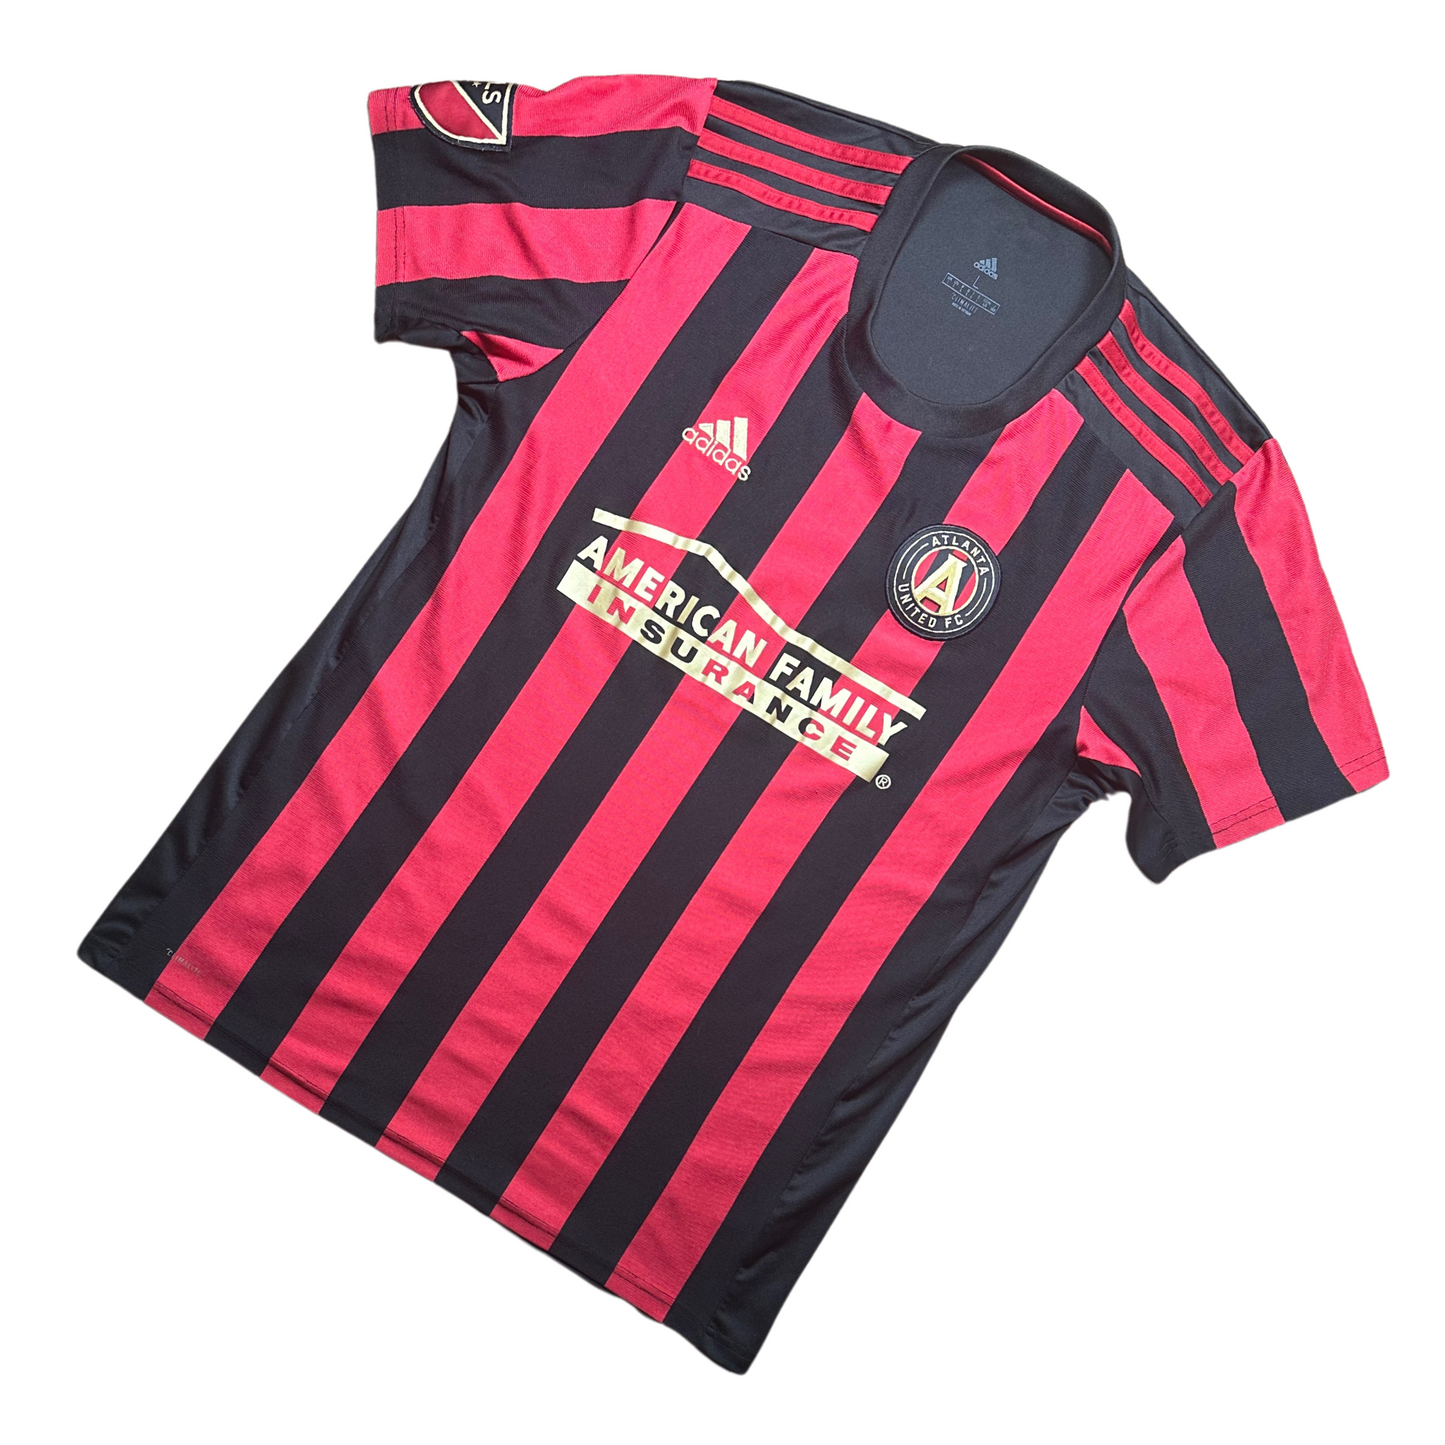 Atalanta United 2019/2020 Home Football Shirt